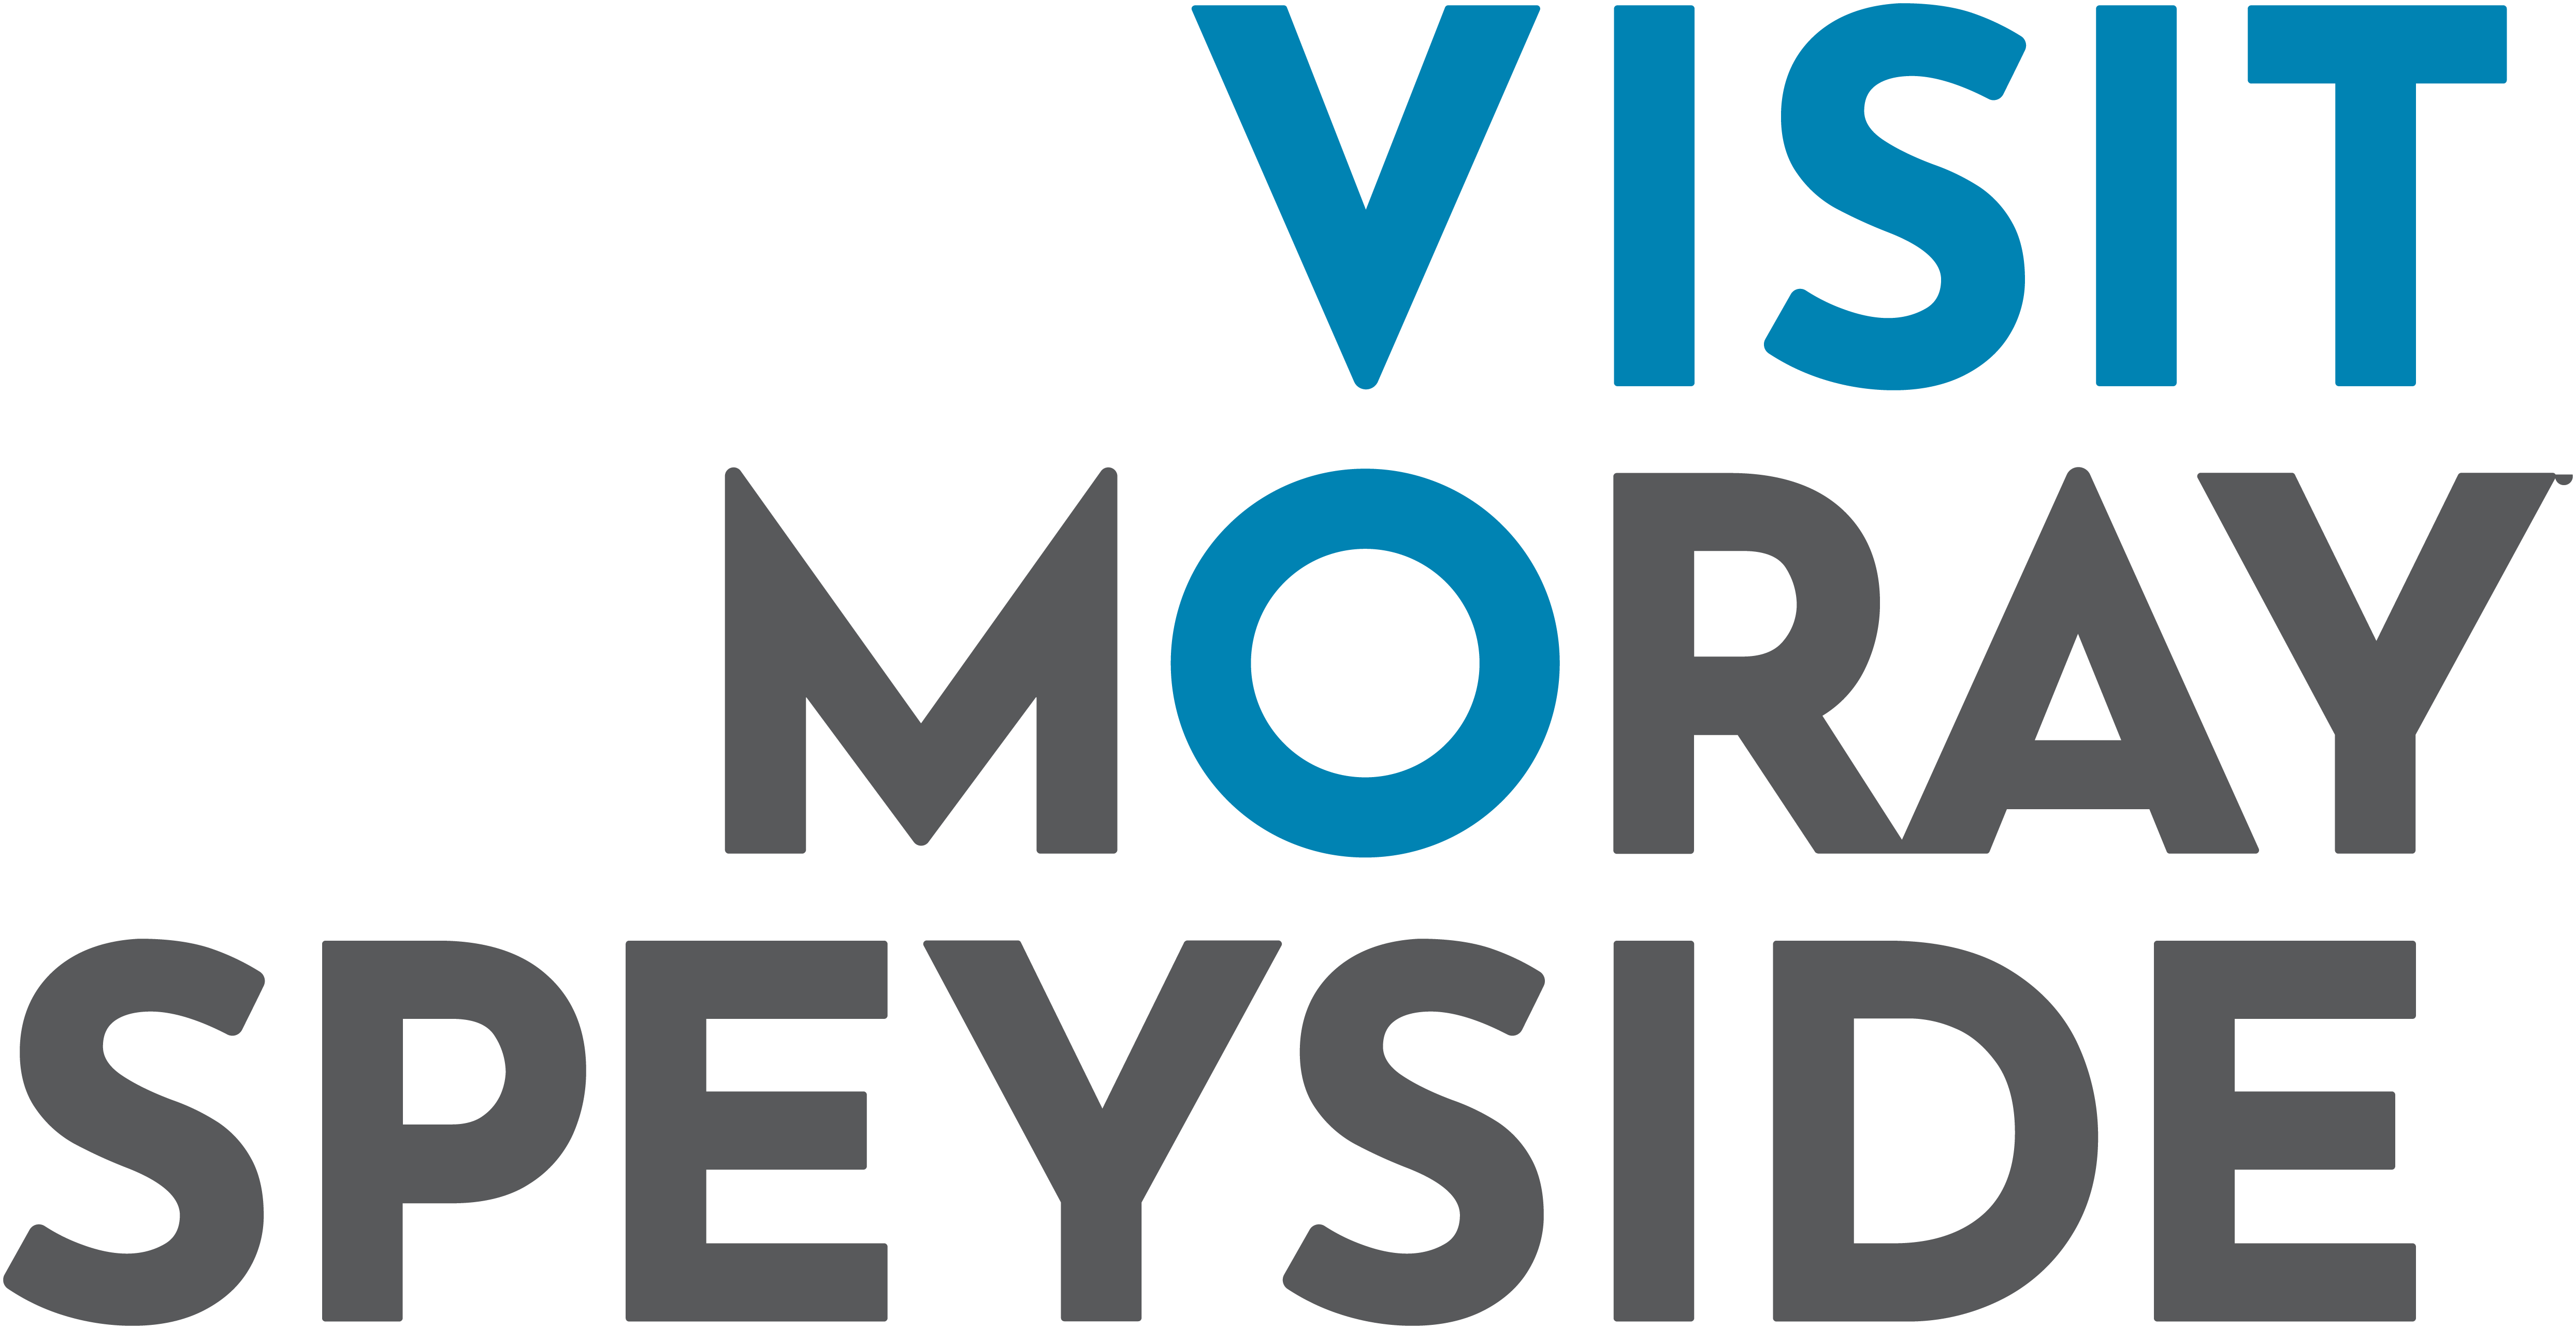 Visit Moray Speyside logo